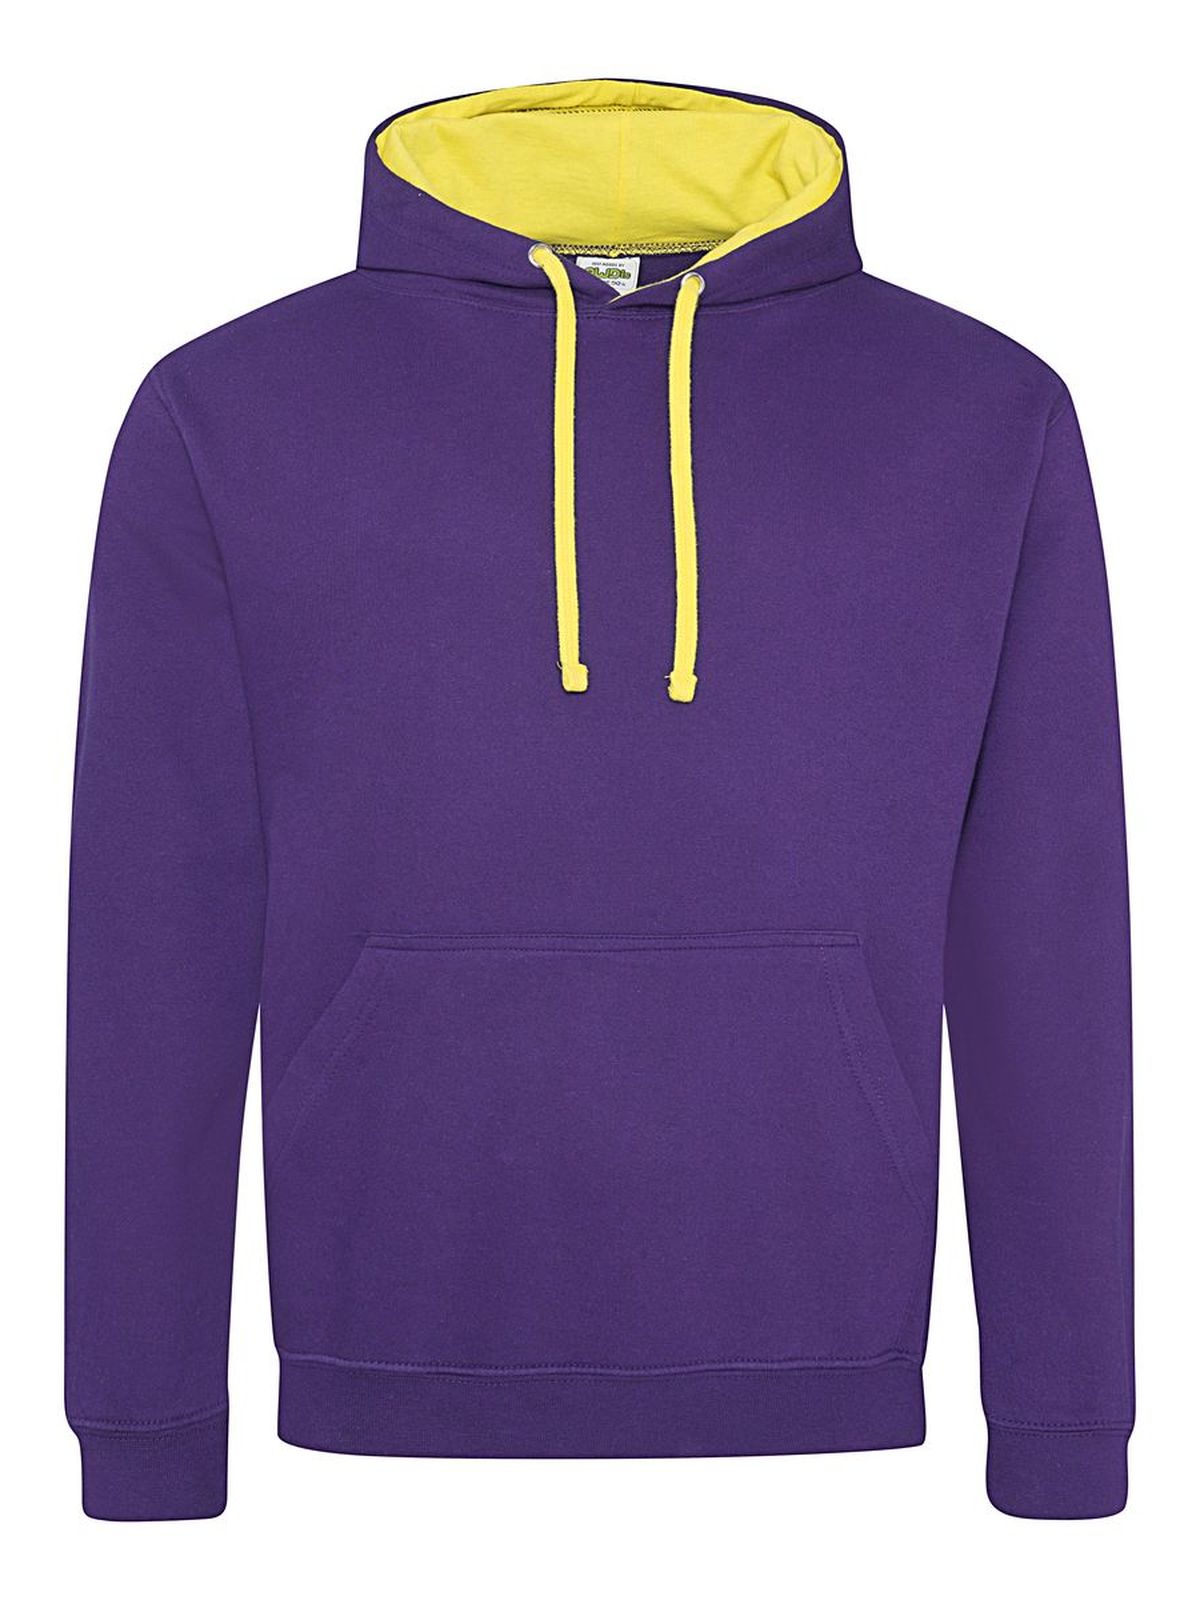 varsity-hoodie-purple-sun-yellow.webp